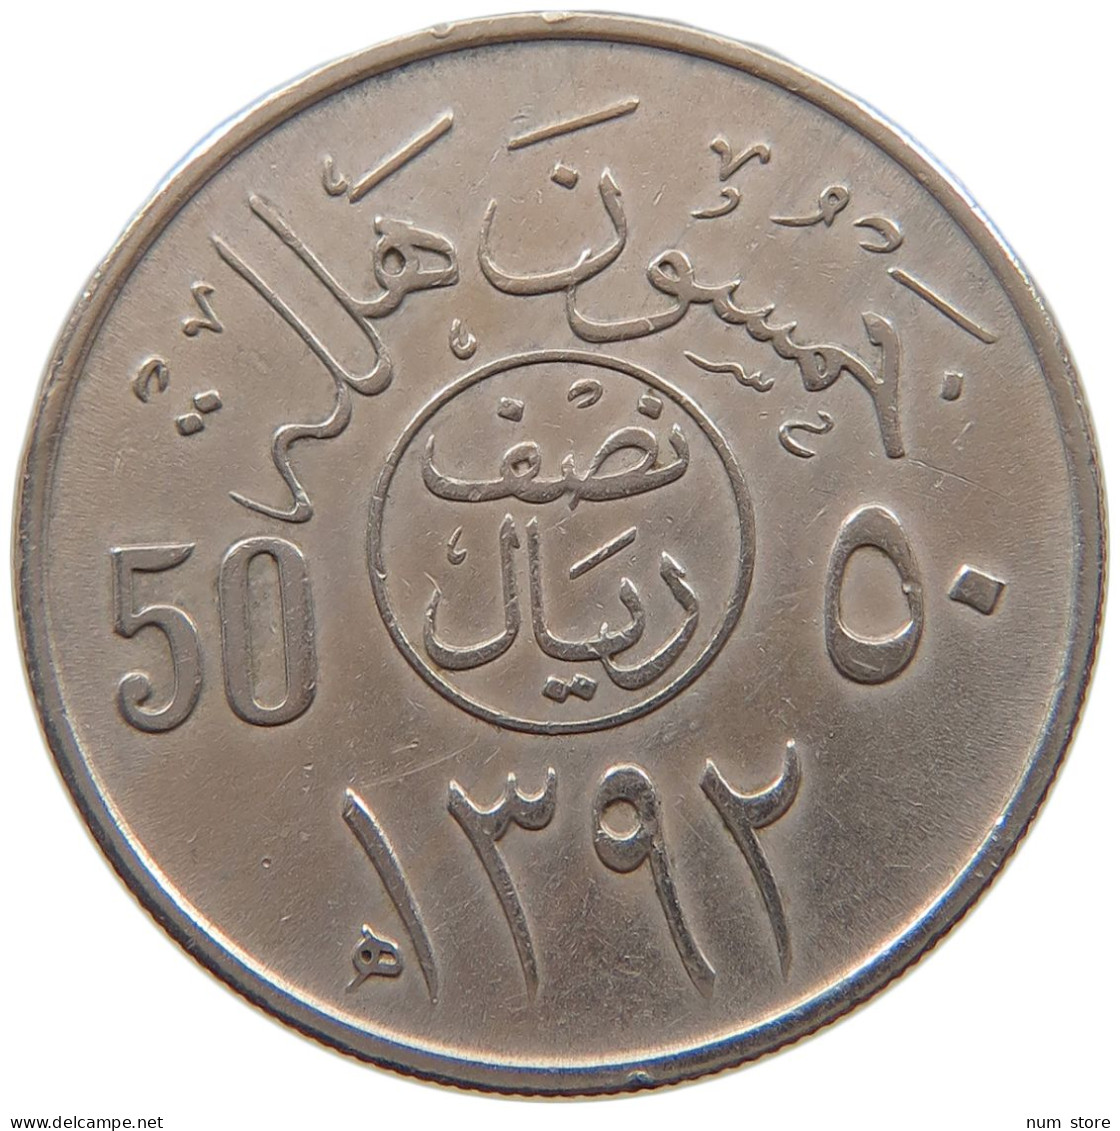 SAUDI ARABIA 50 HALALA 1392  #a072 0121 - Arabia Saudita